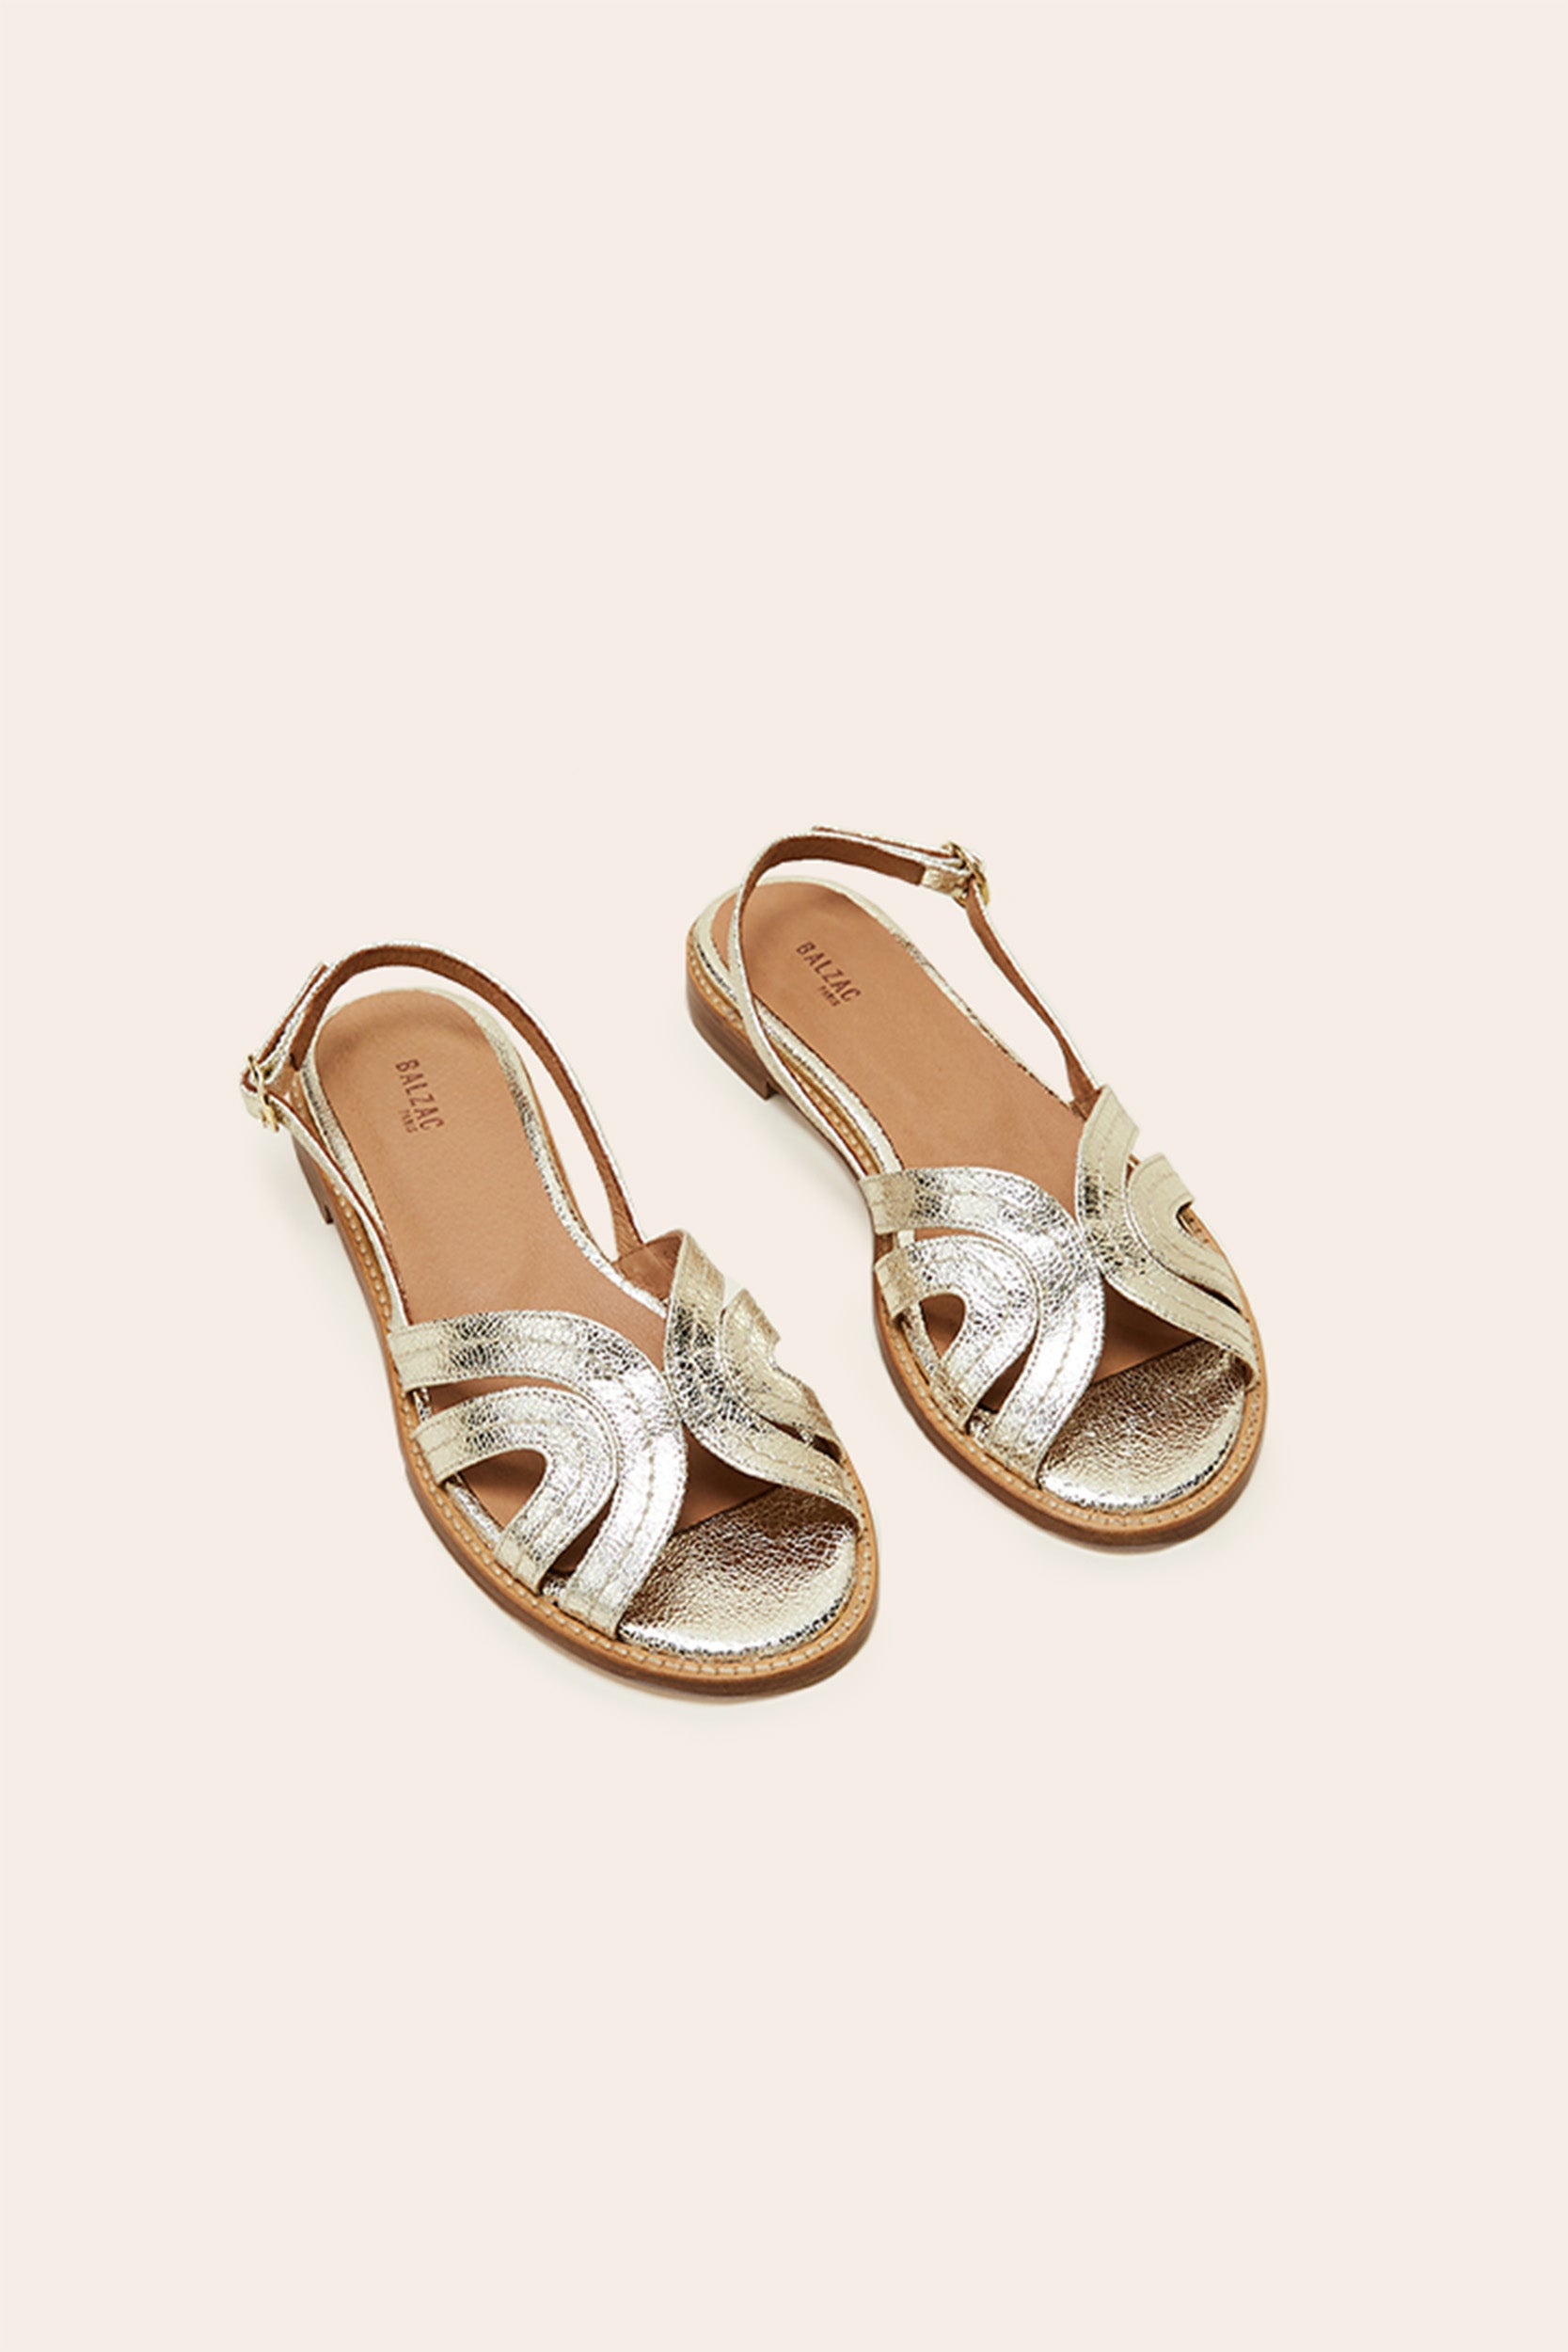 Golden Reverie sandals